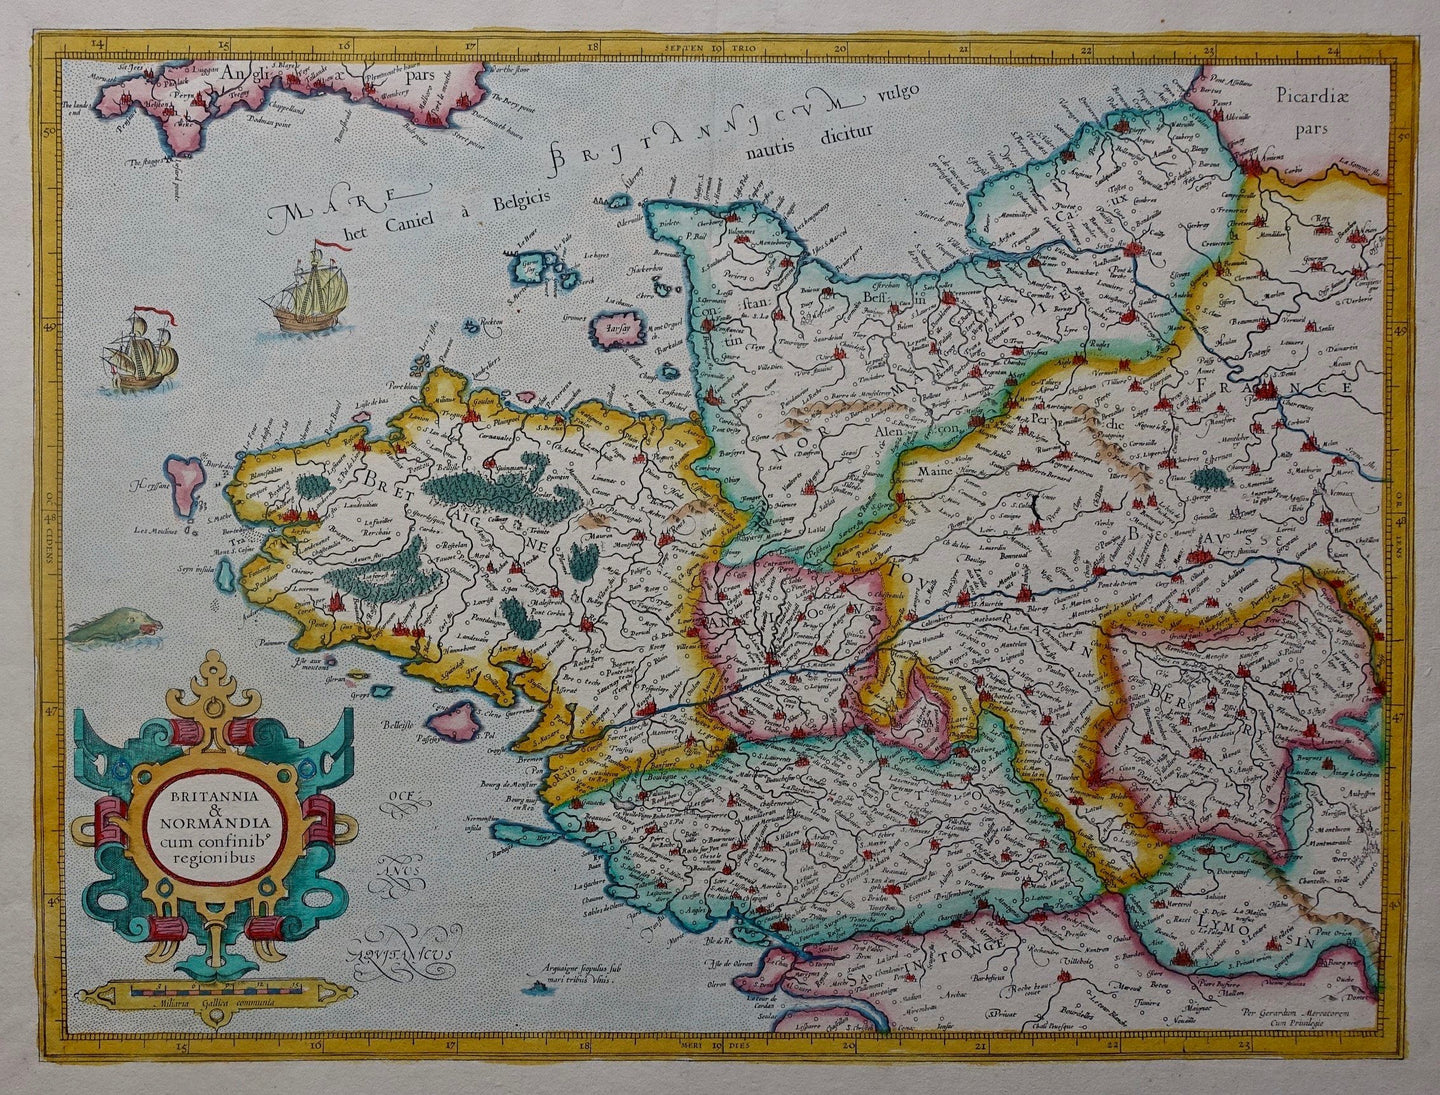 Frankrijk Bretagne Normandië France Brittany Normandy - G Mercator - ca 1585